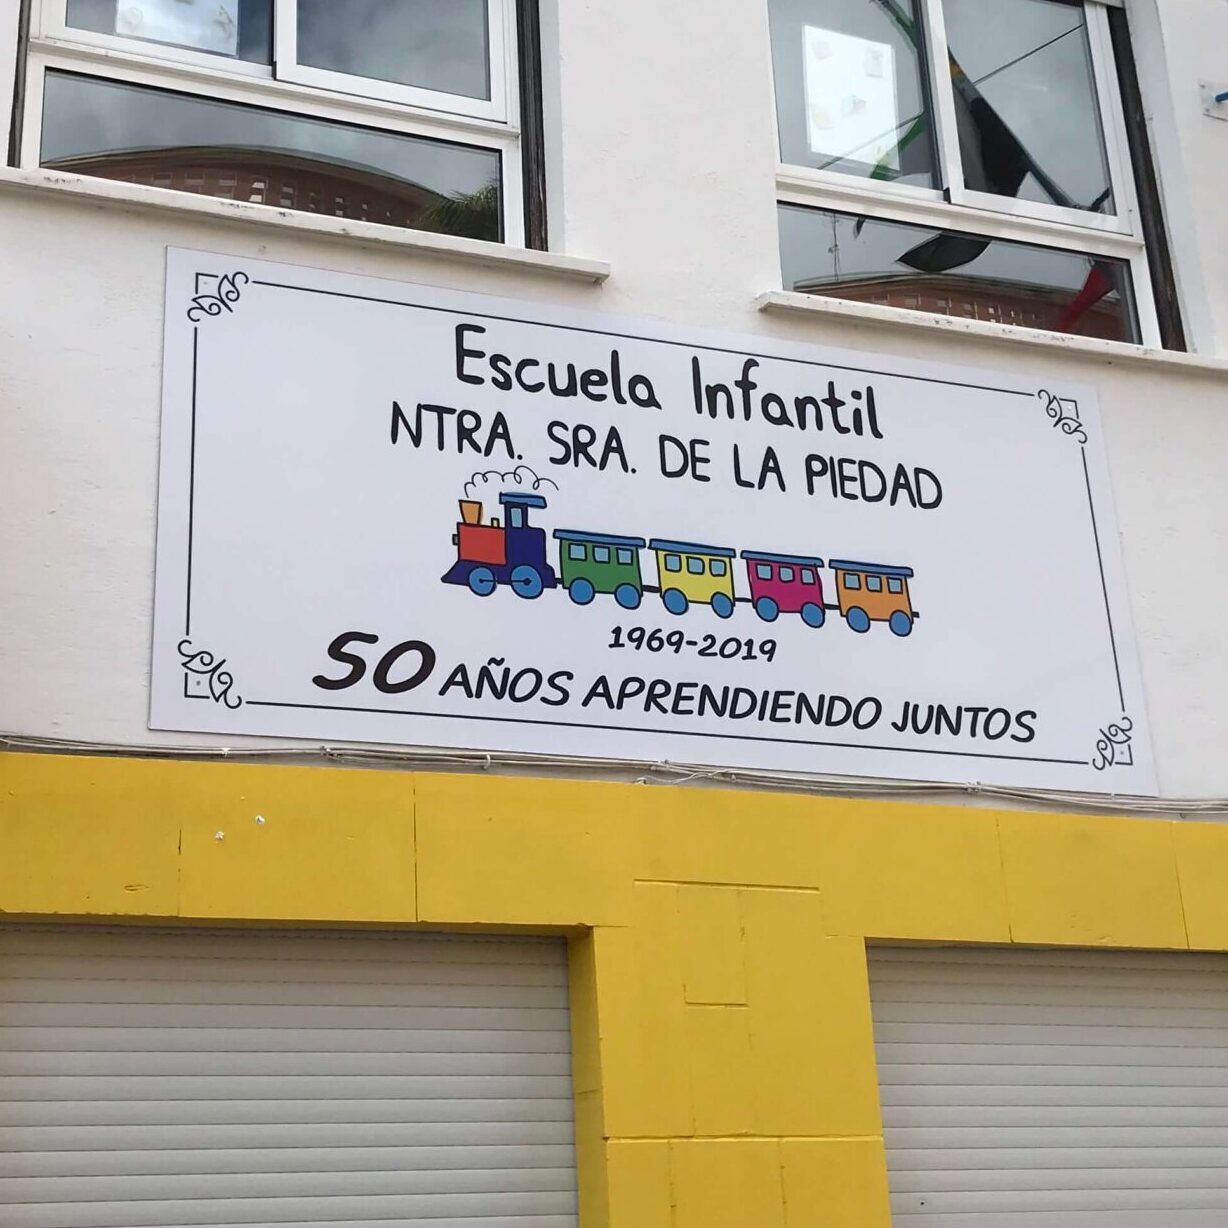 Imagen del letrero de la Escuela Infantil Nuestra señora de la piedad, rotulado en chapa y colocado sobre la fachada del edificio.